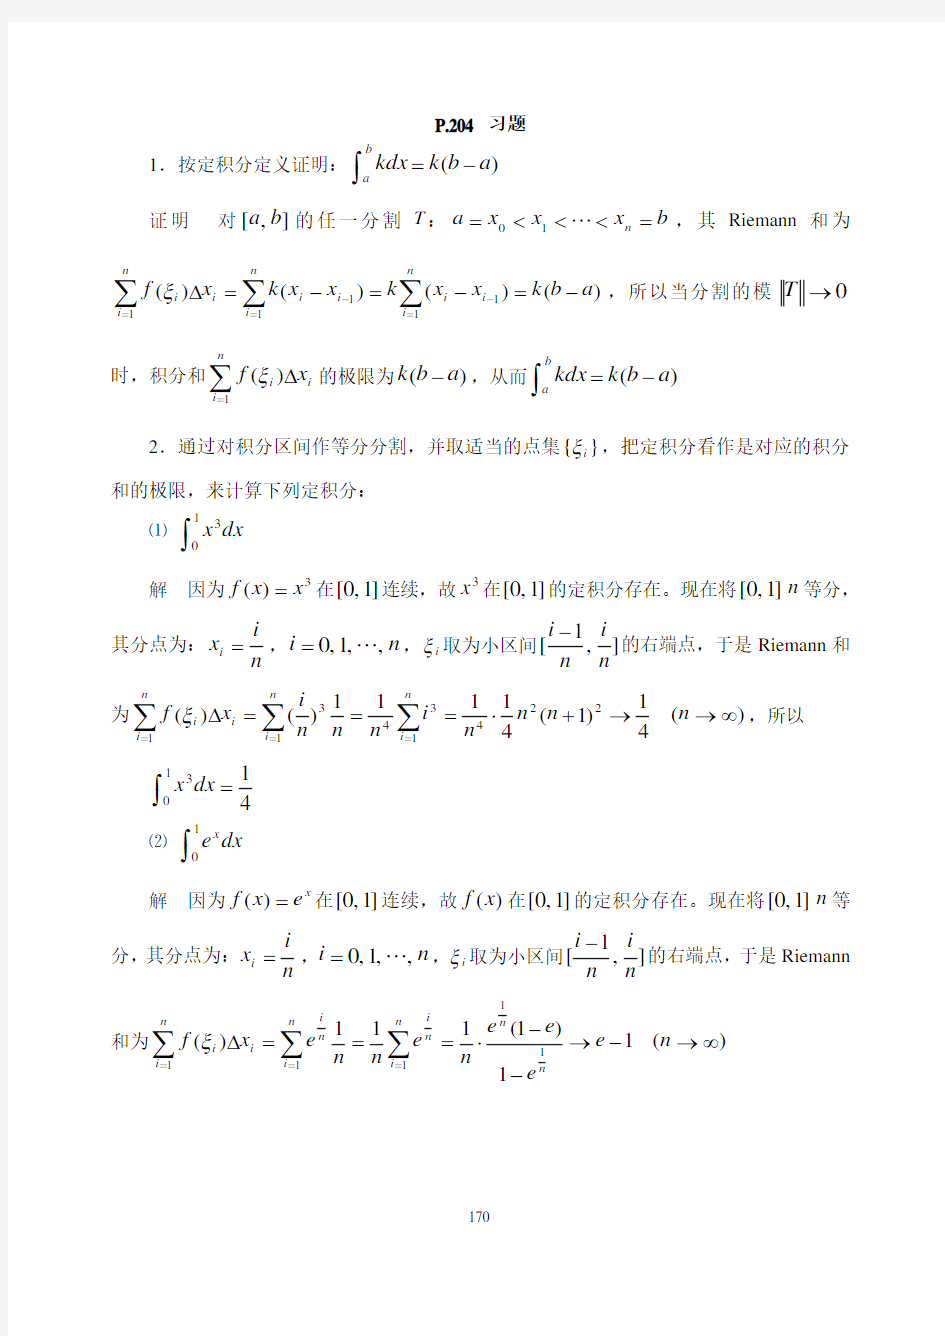 《数学分析》(华师大二版)课本上的习题9